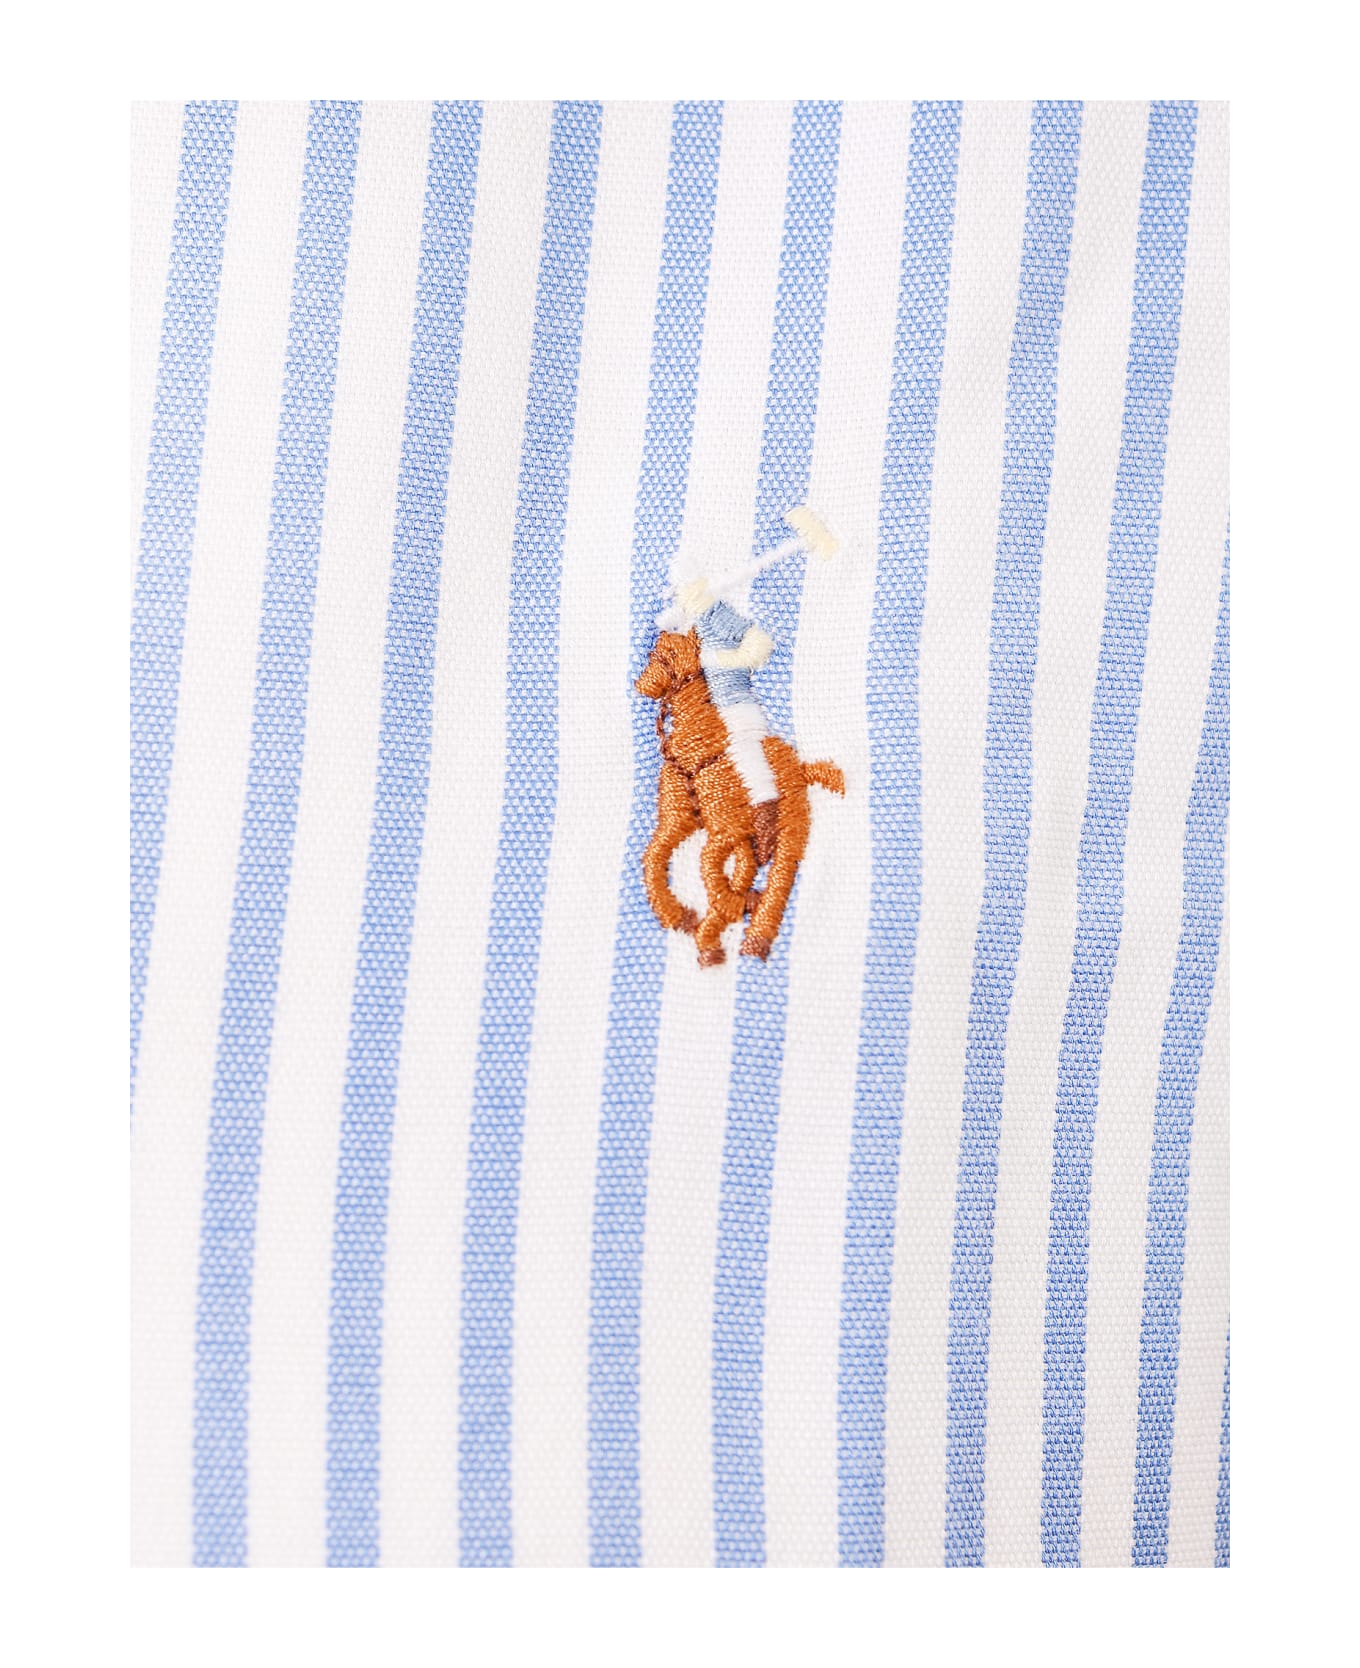 Ralph Lauren Striped Long-sleeved Shirt - Blue シャツ